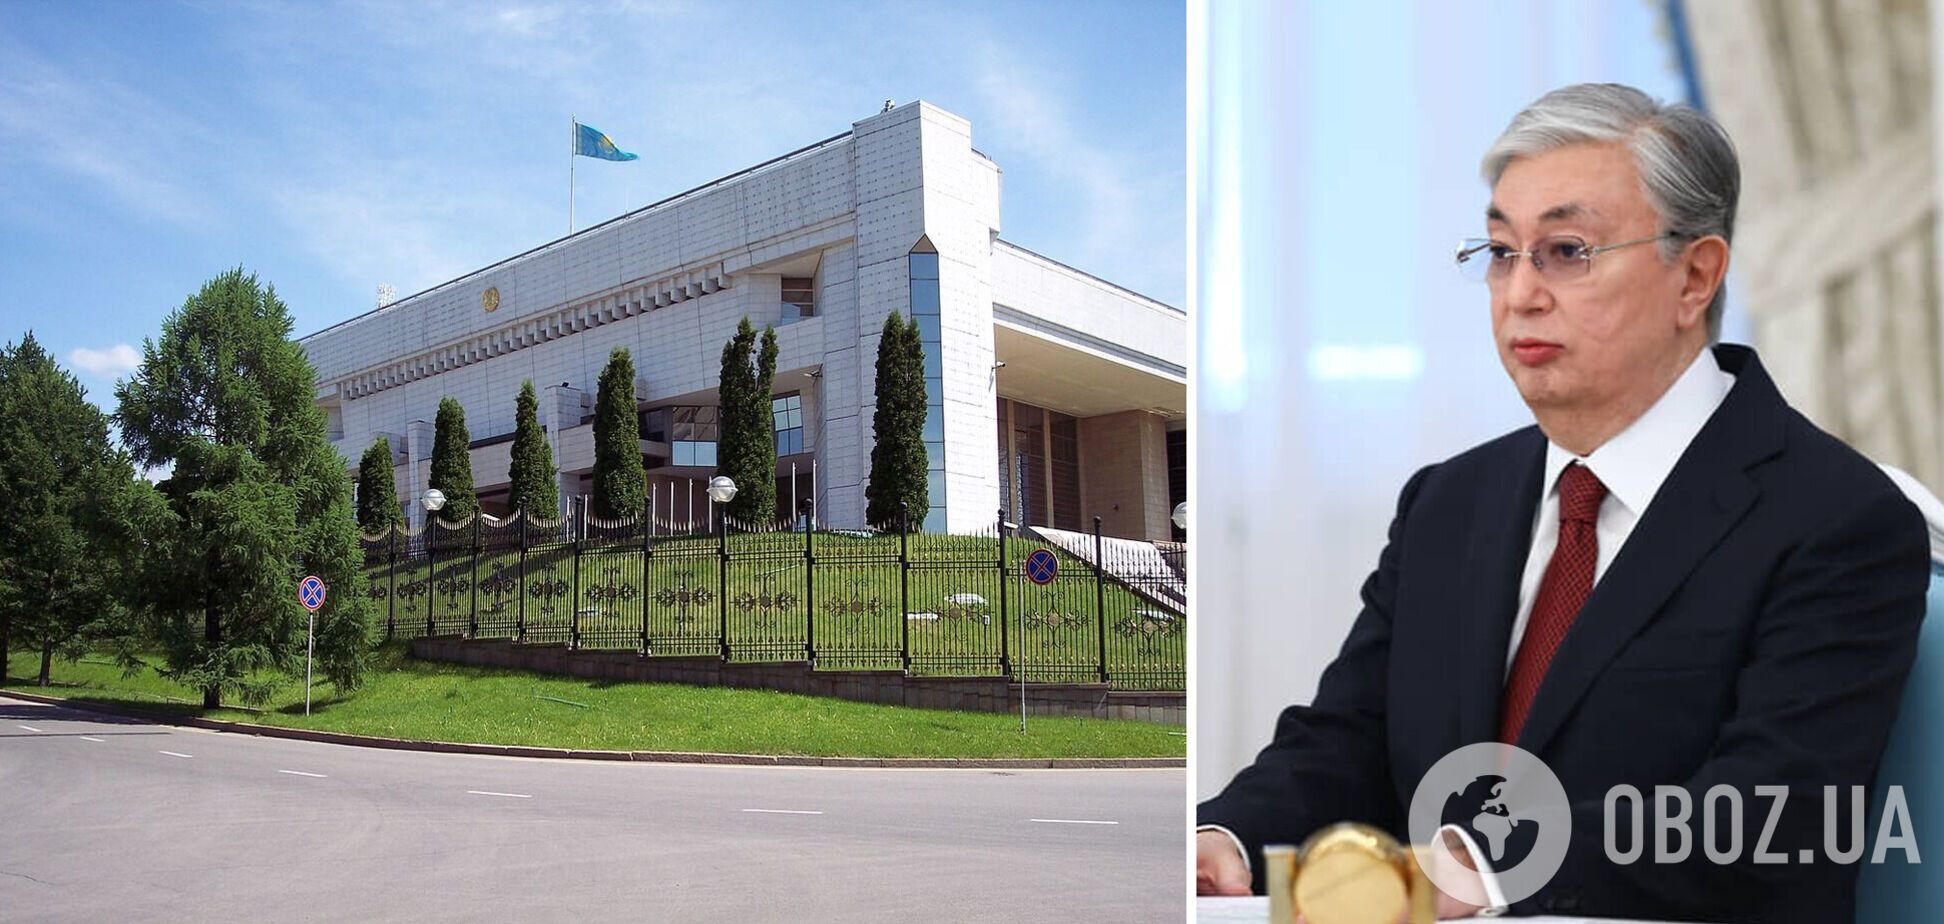 Митингующие захватили алматинскую резиденцию президента Казахстана: столкновения не прекращаются